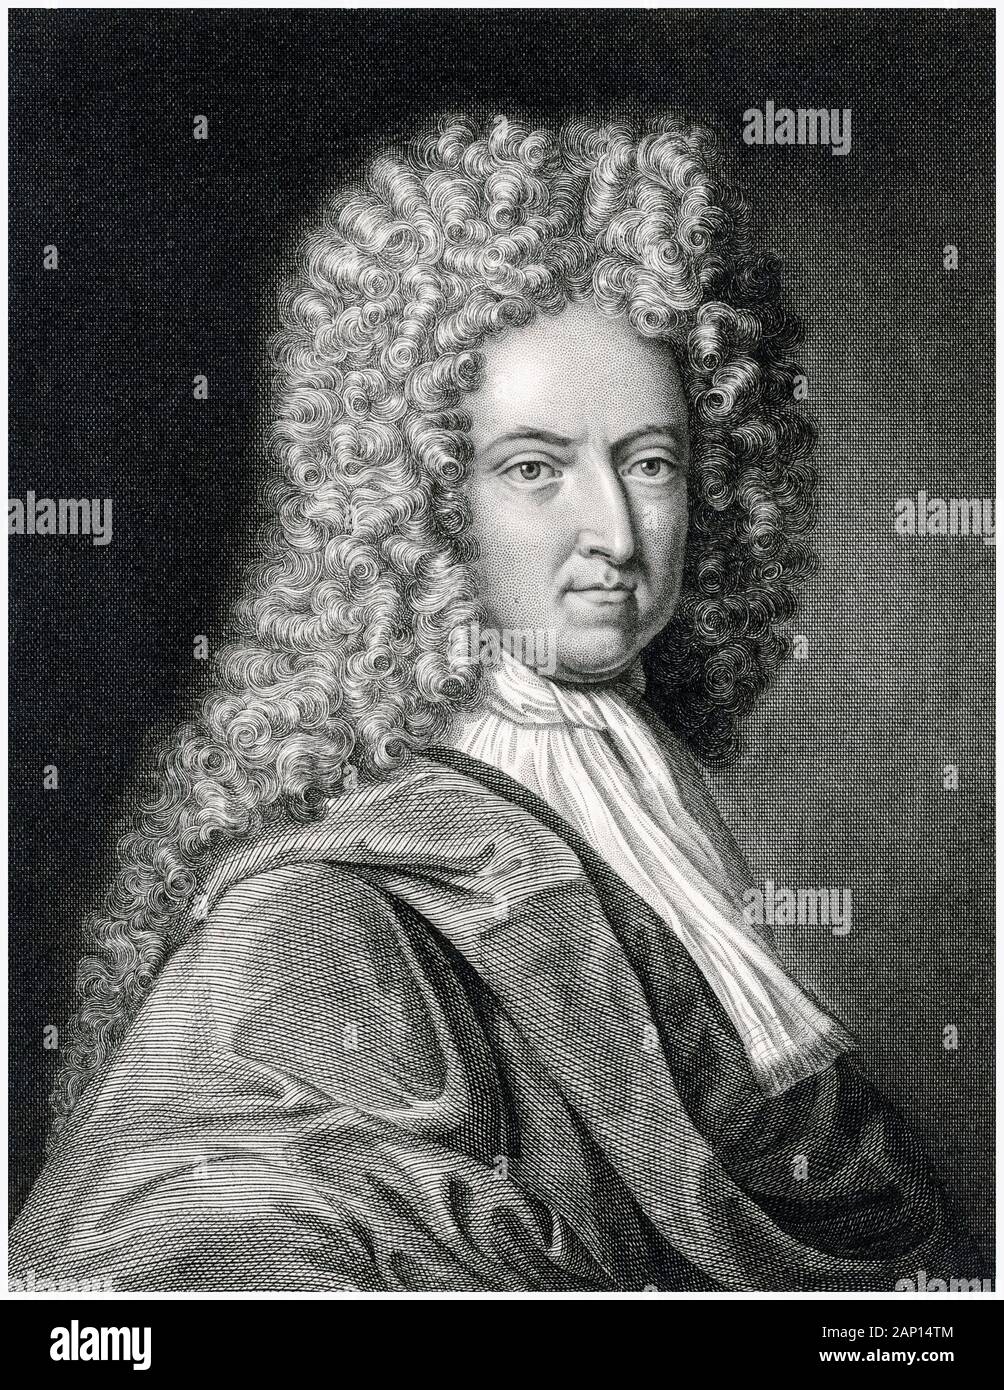 Daniel Defoe (1660-1731), retrato grabado, antes de 1731 Foto de stock